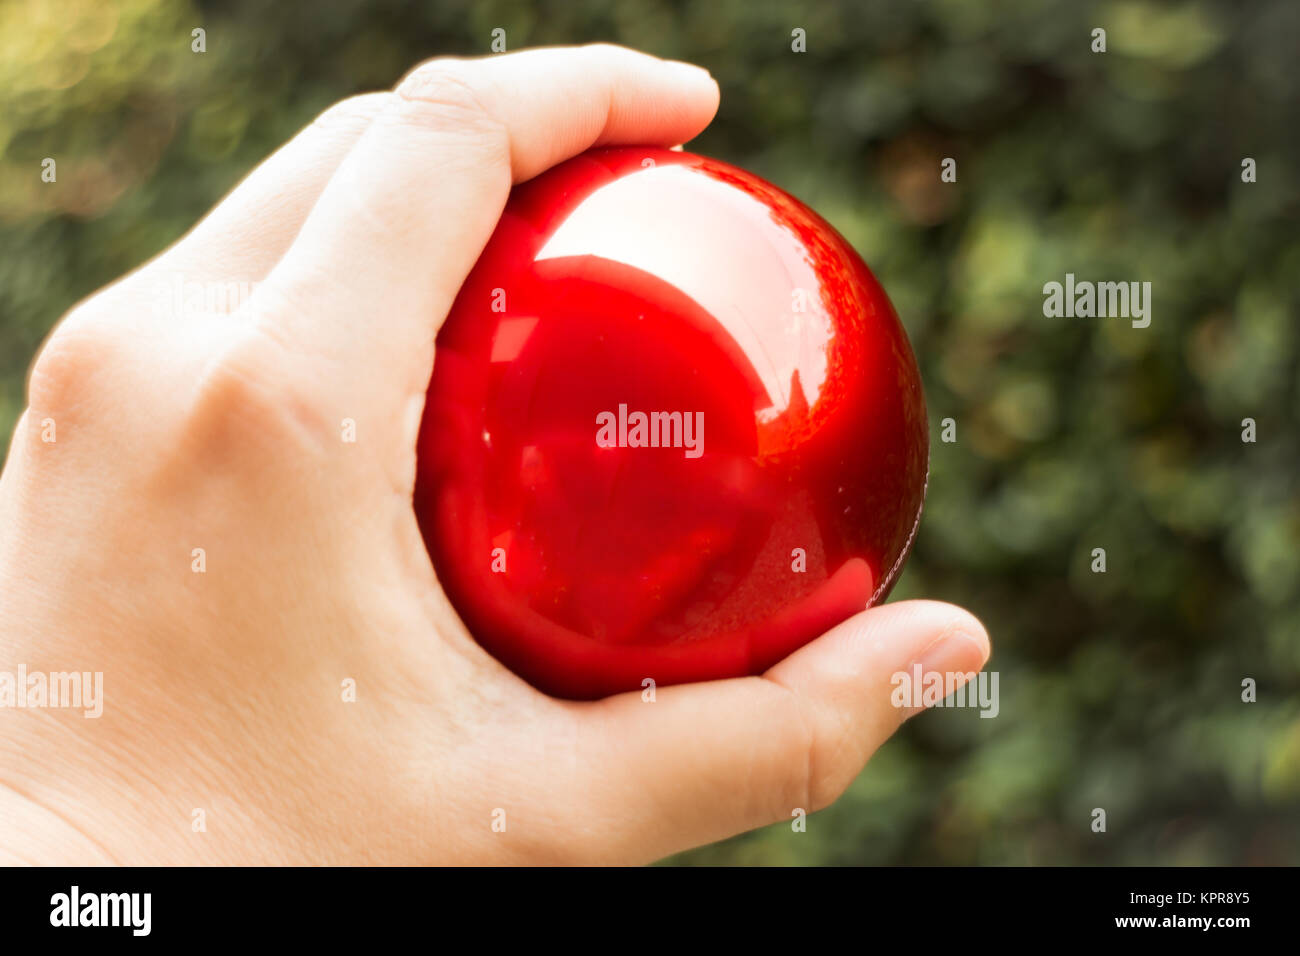 Красный шарик с прорезью на руке. Красные шарики в суставах. Стресс шар красный.